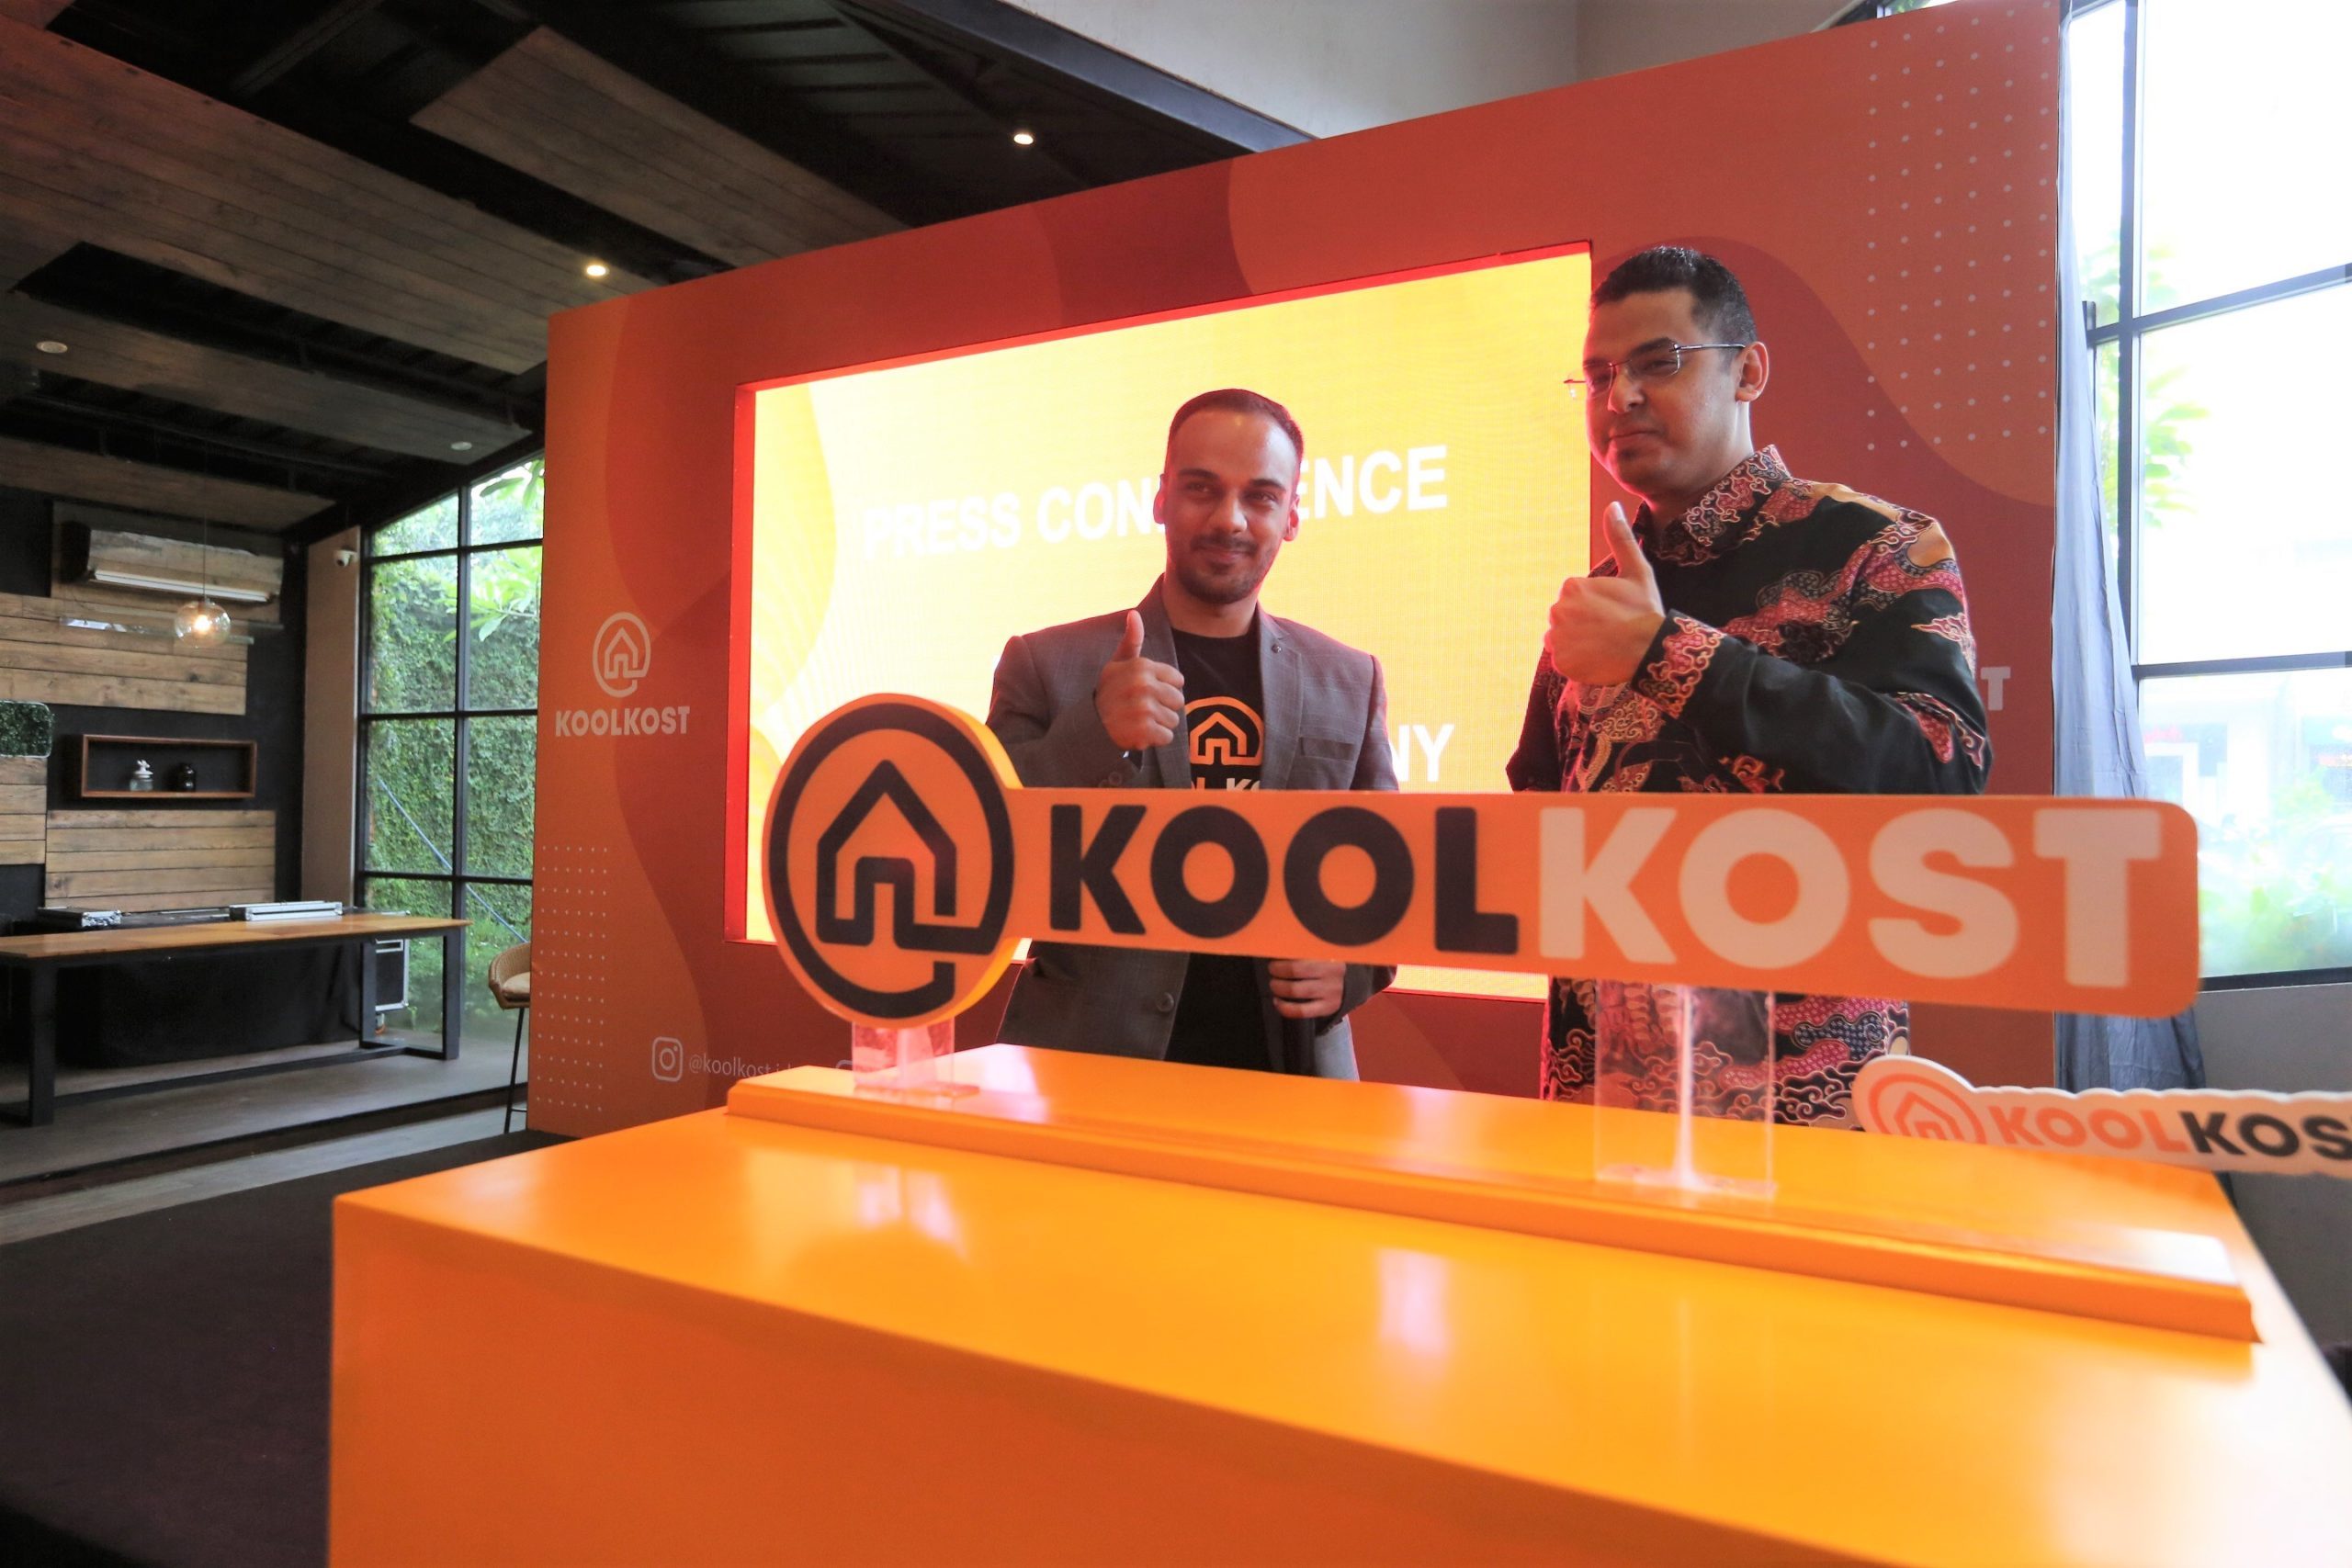 Indonesia Digest: RedDoorz launches KoolKost; GrabJobs ties with Moka